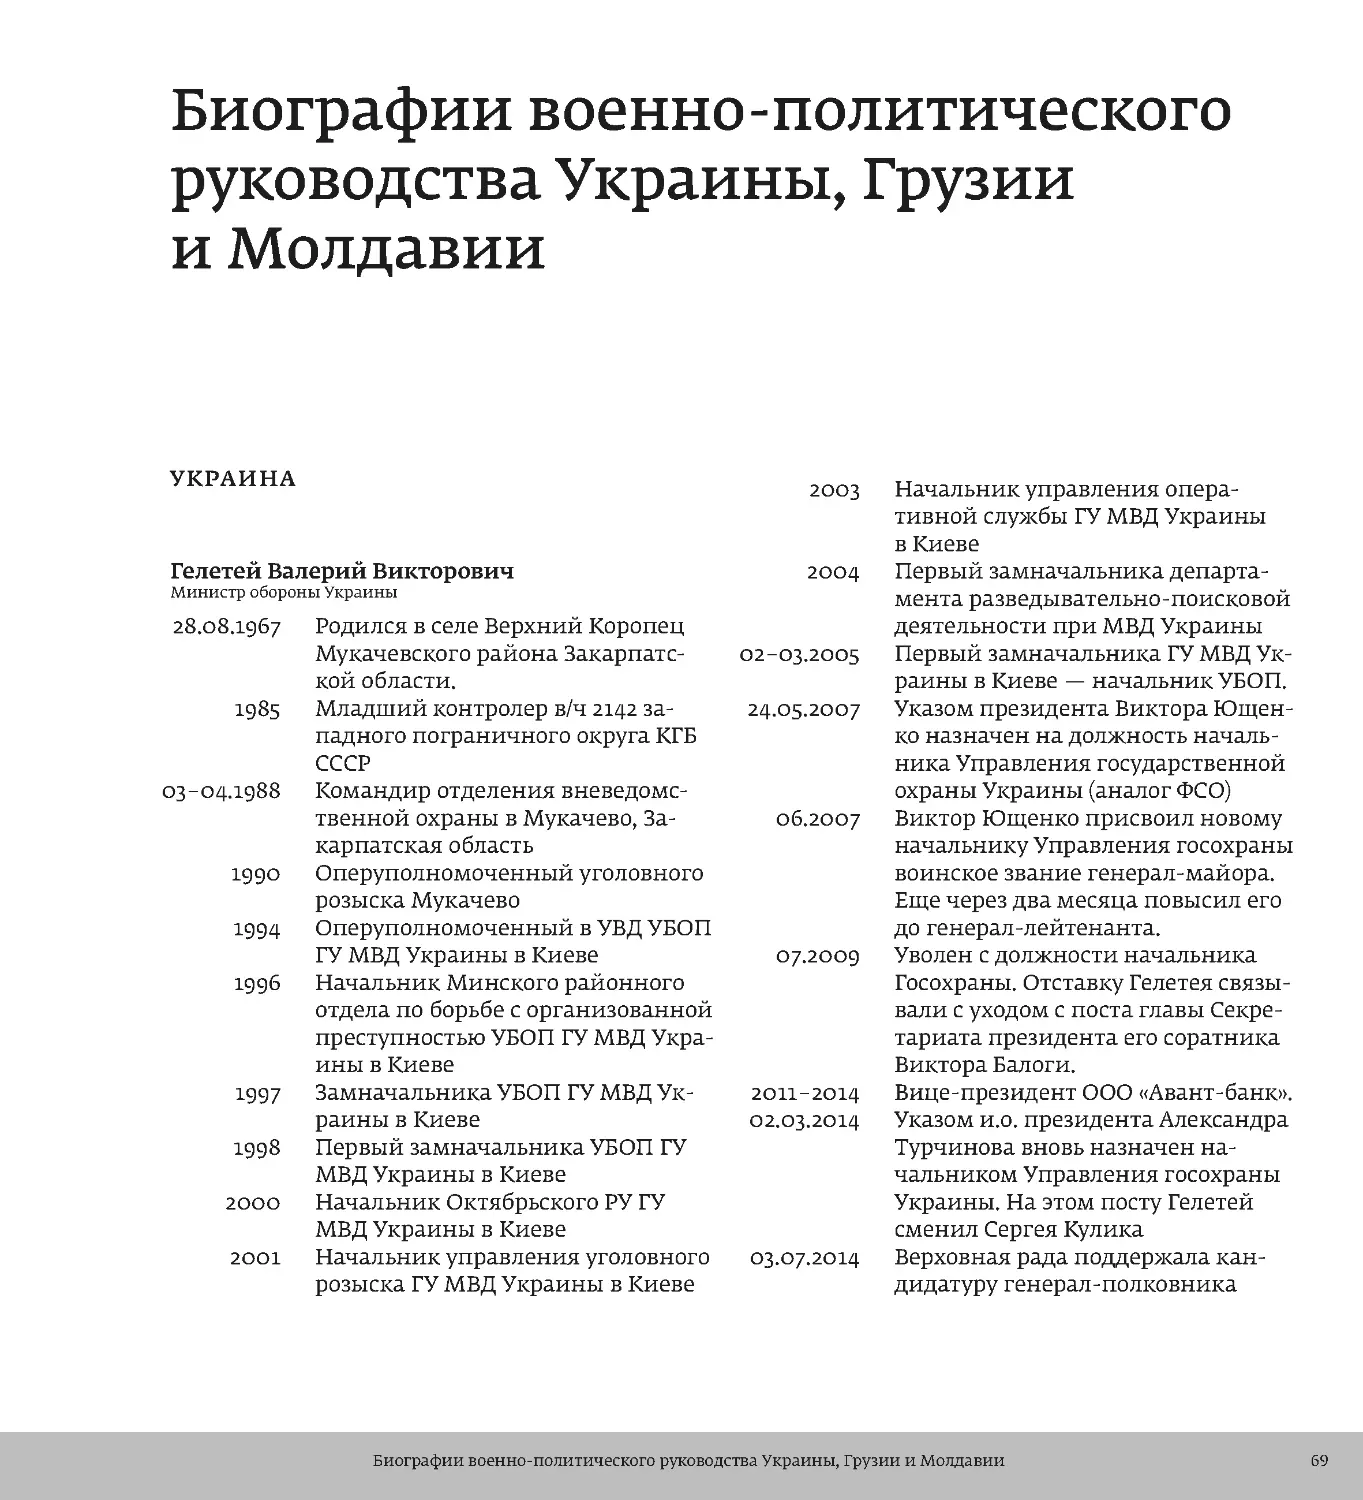 Биографии военно-политического руководства Украины, Грузии и Молдавии